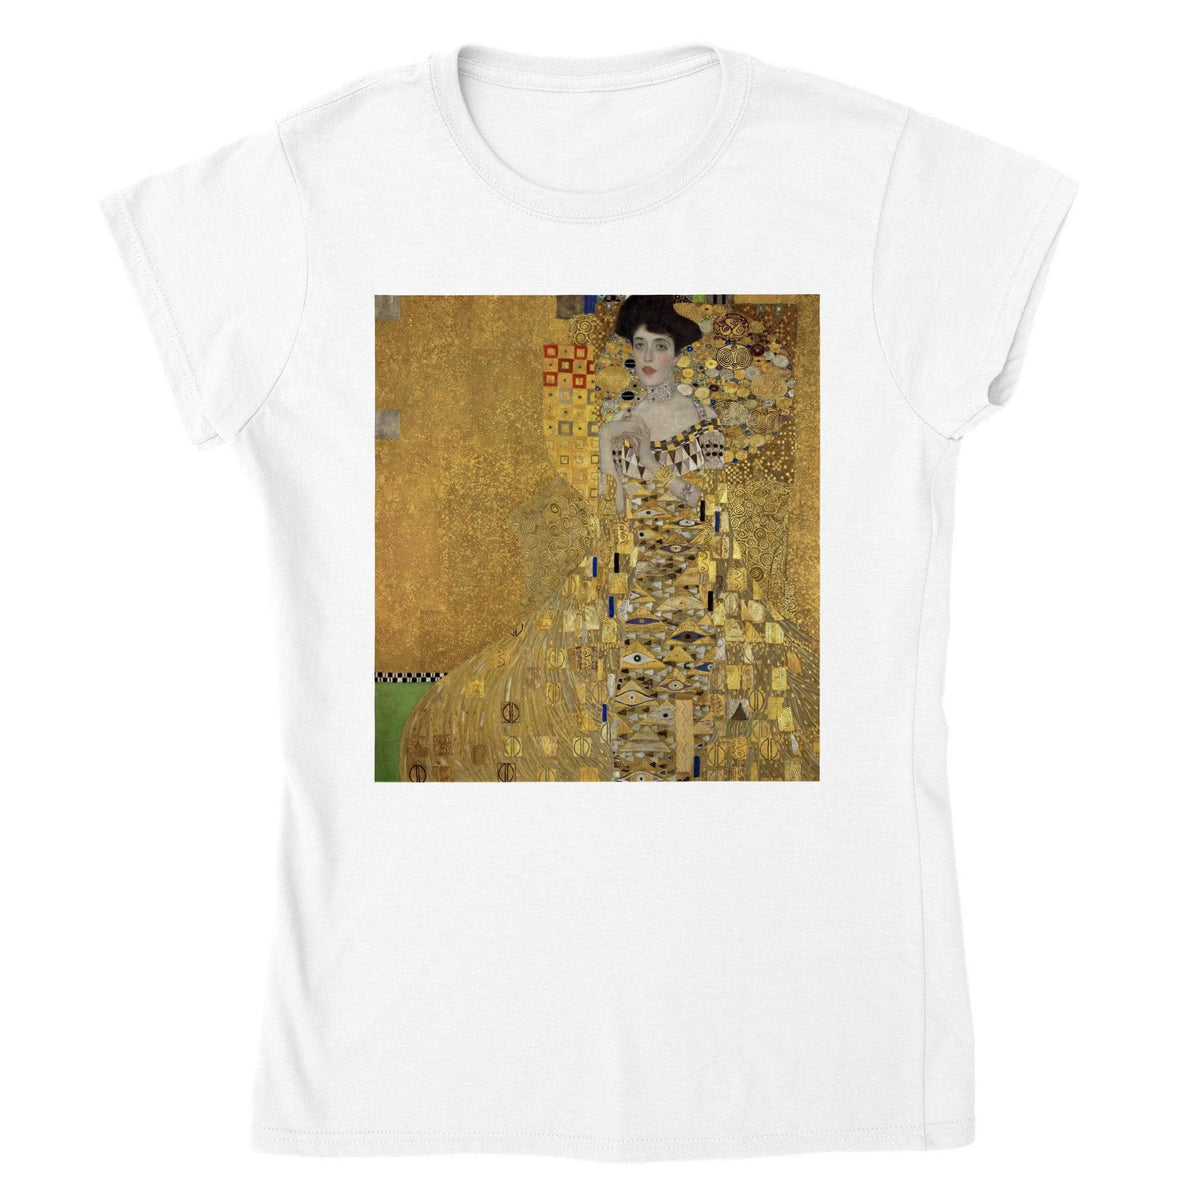 Gustav Klimt's Portrait of Adele Bloch-Bauer T-shirt - StylinArts